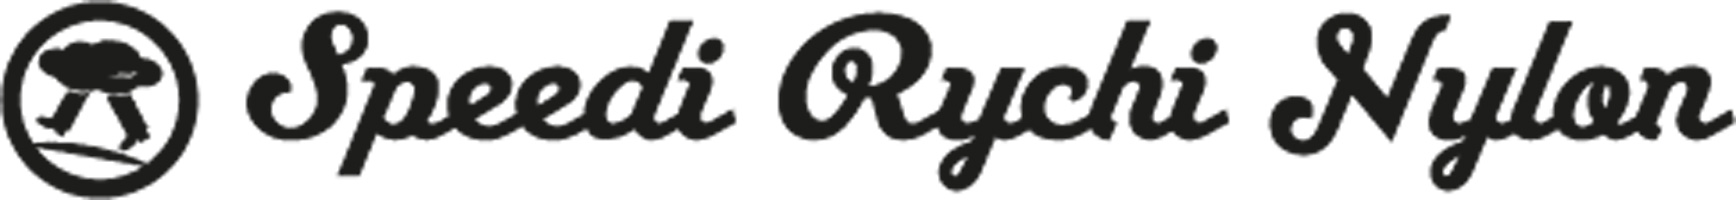 Logo de Speedi Rychi Nylon, partenaire de Metz Mécènes Solidaires